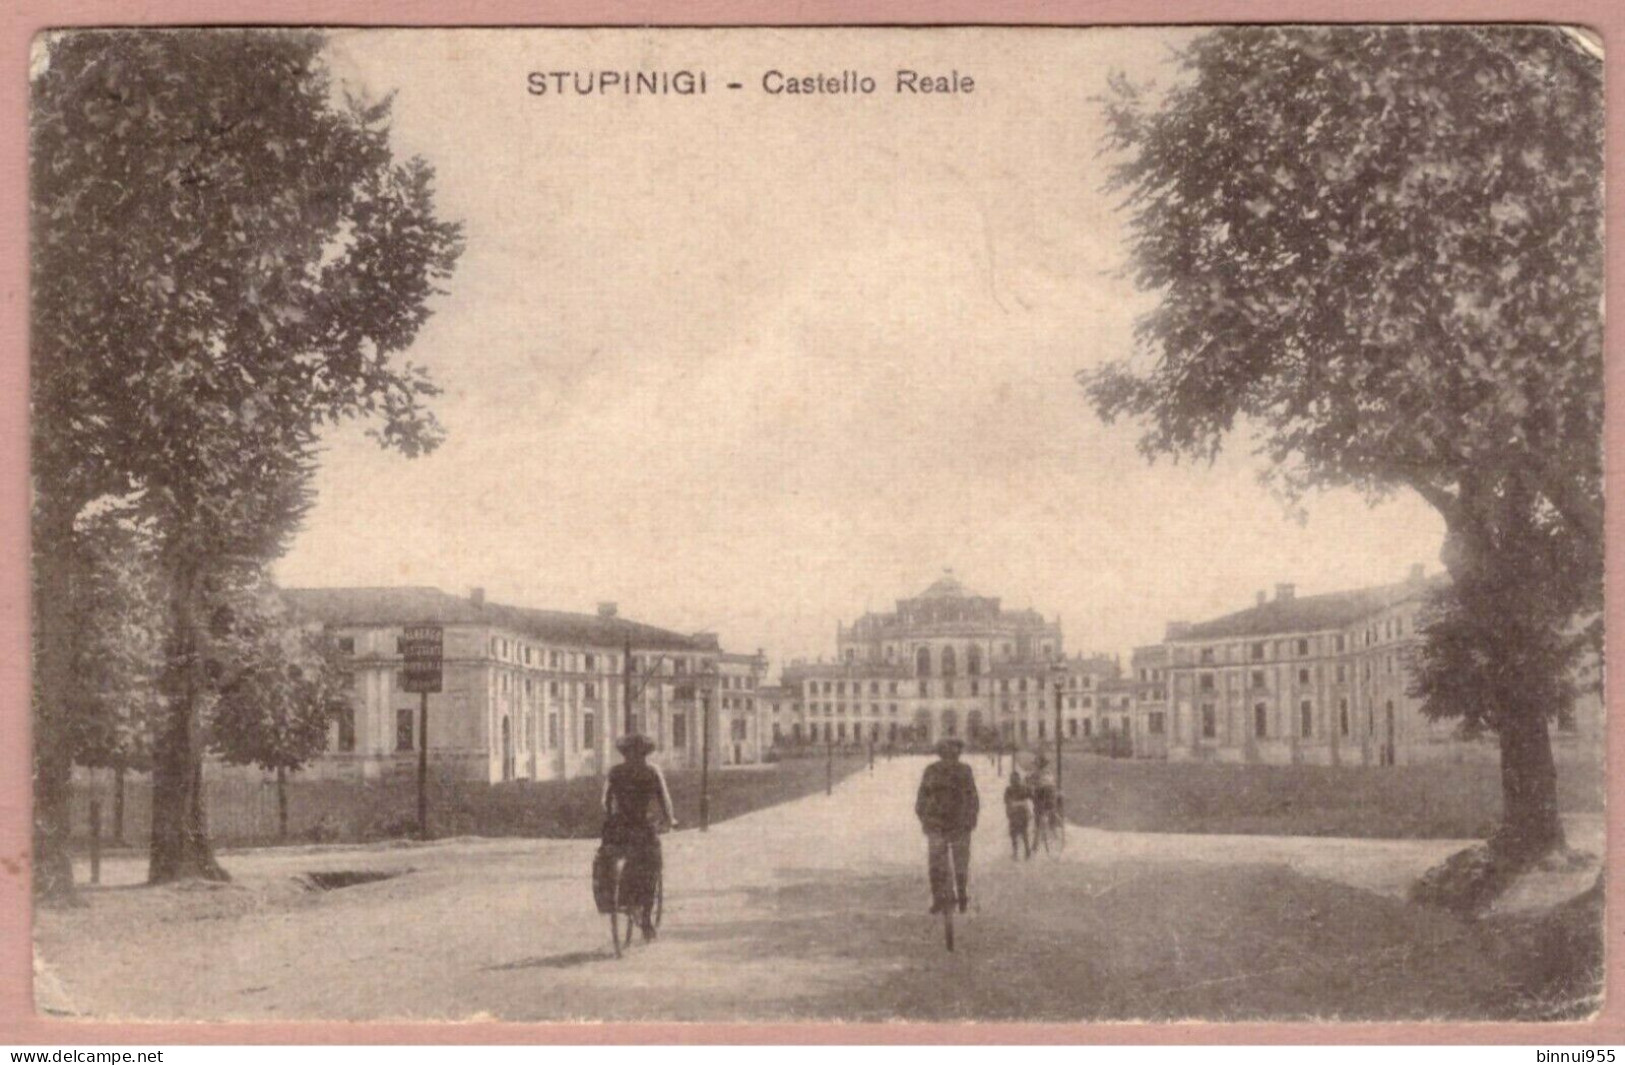 Cartolina Stupinigi Castello Reale - Viaggiata 1917 - Viste Panoramiche, Panorama